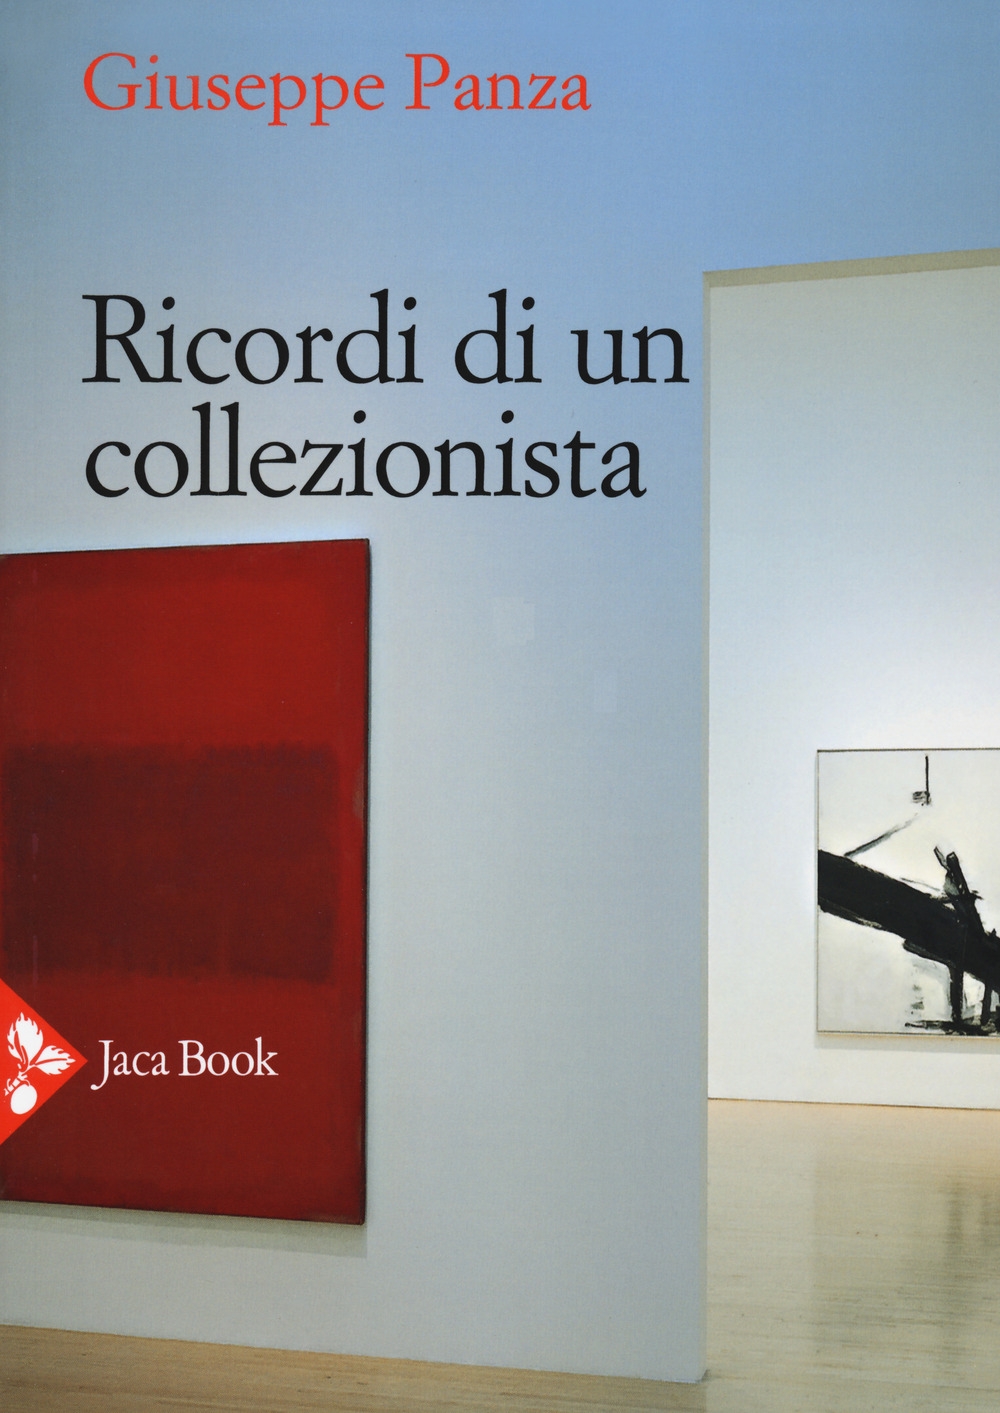 Libri Giuseppe Panza - Ricordi Di Un Collezionista NUOVO SIGILLATO, EDIZIONE DEL 07/08/2020 SUBITO DISPONIBILE